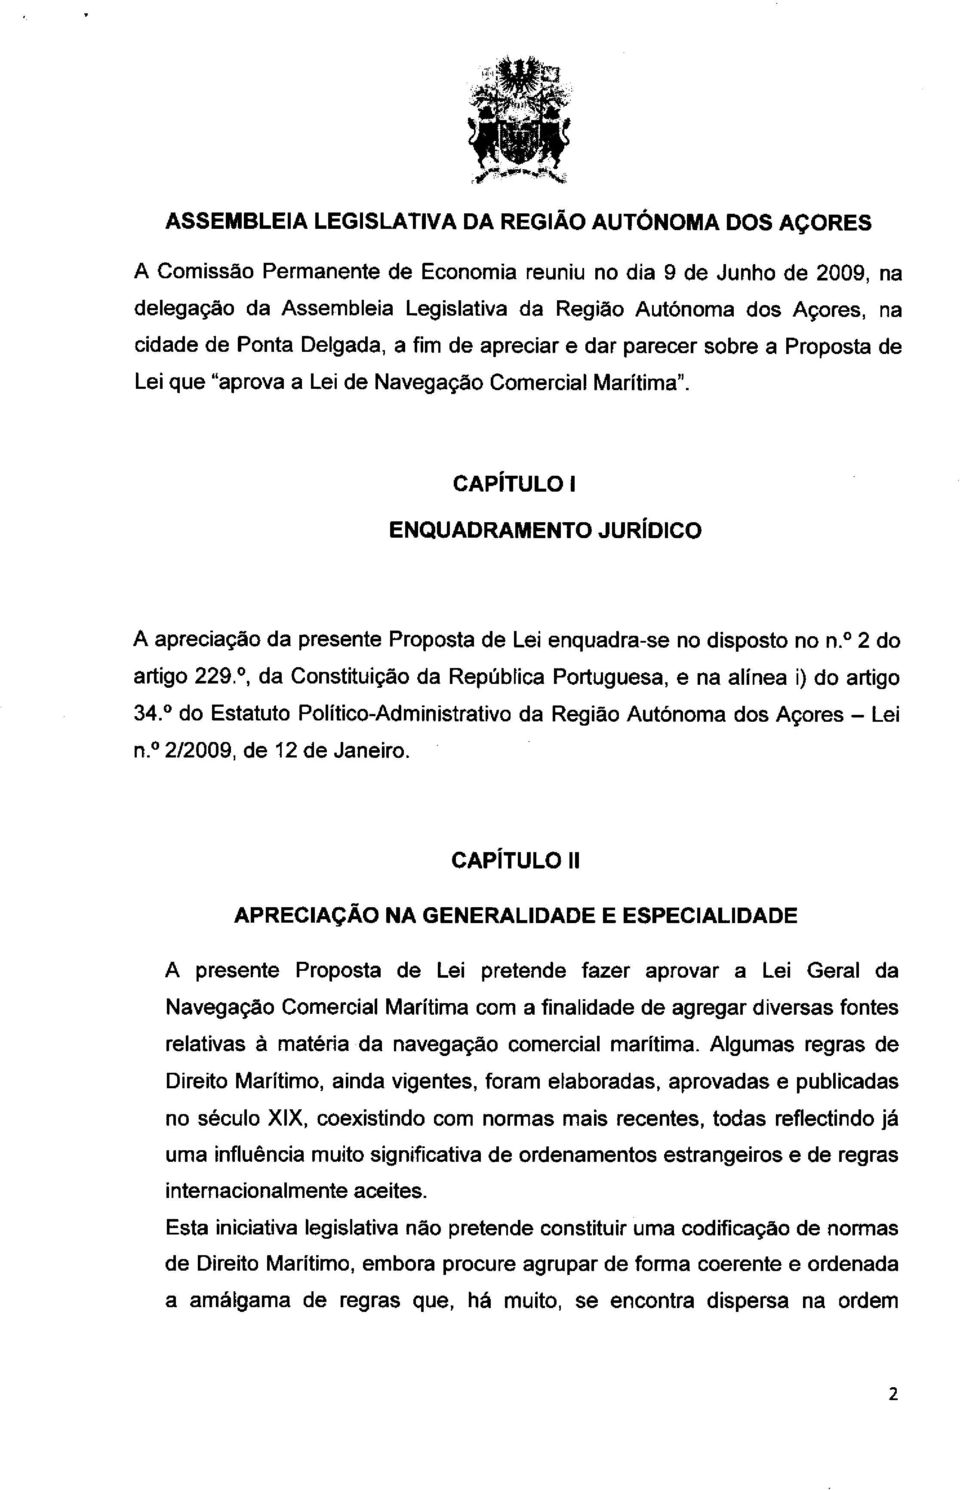 , da Constituicto da Rep(Italica Portuguesa, e na alinea i) do artigo 34. do Estatuto Politico-Administrativo da Regiao AutOnoma dos Acores Lei n. 2/2009, de 12 de Janeiro.